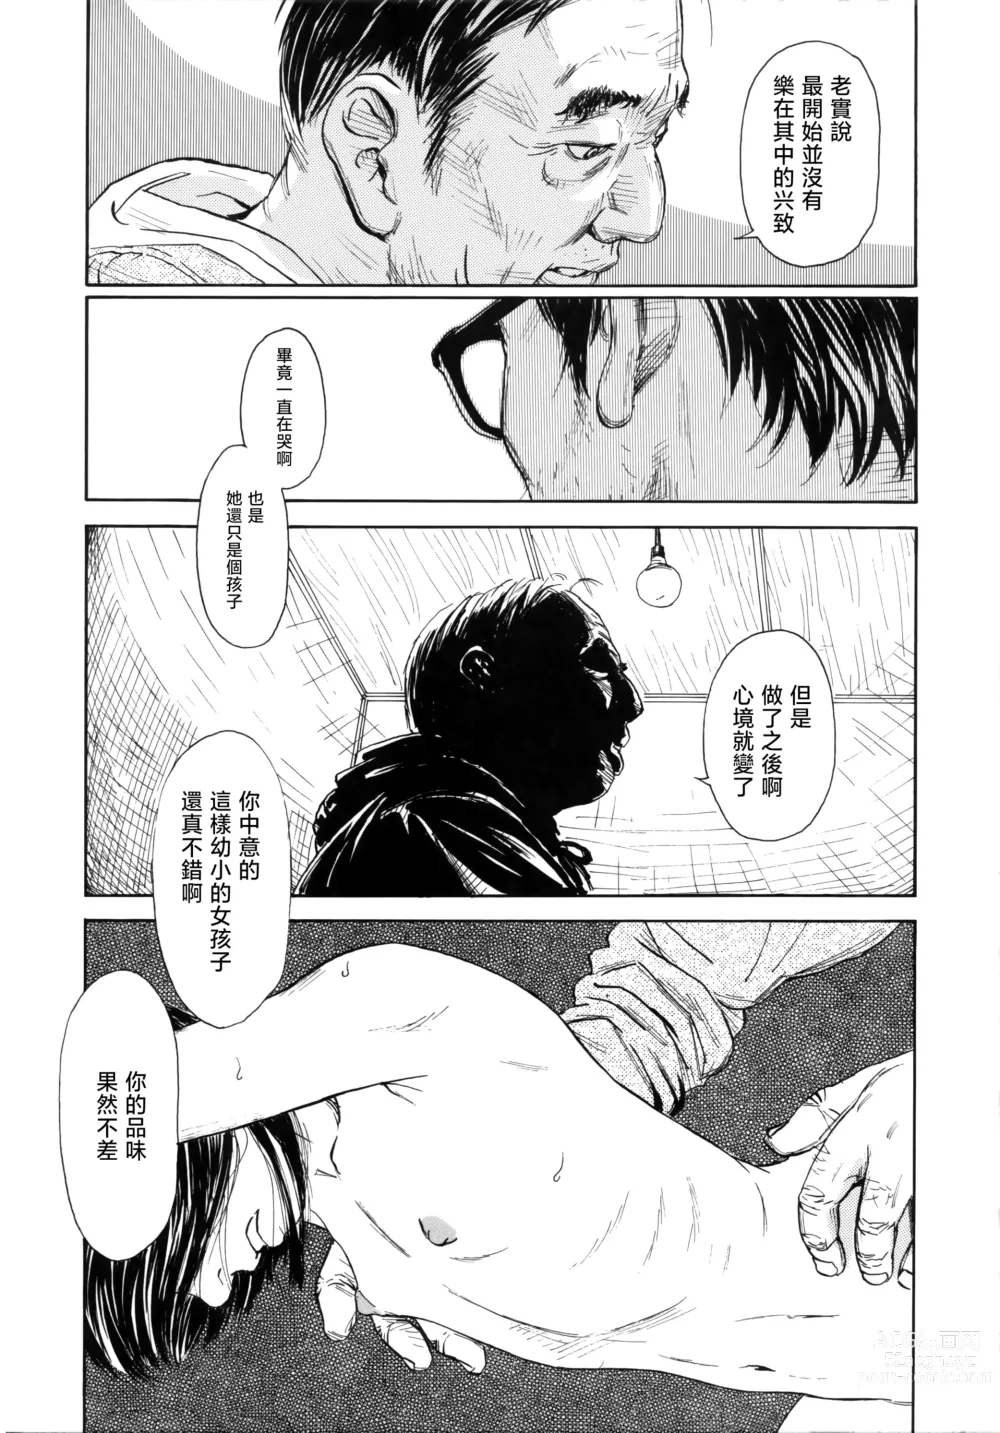 Page 12 of manga Ooki na Nanika no Ki no Shita de